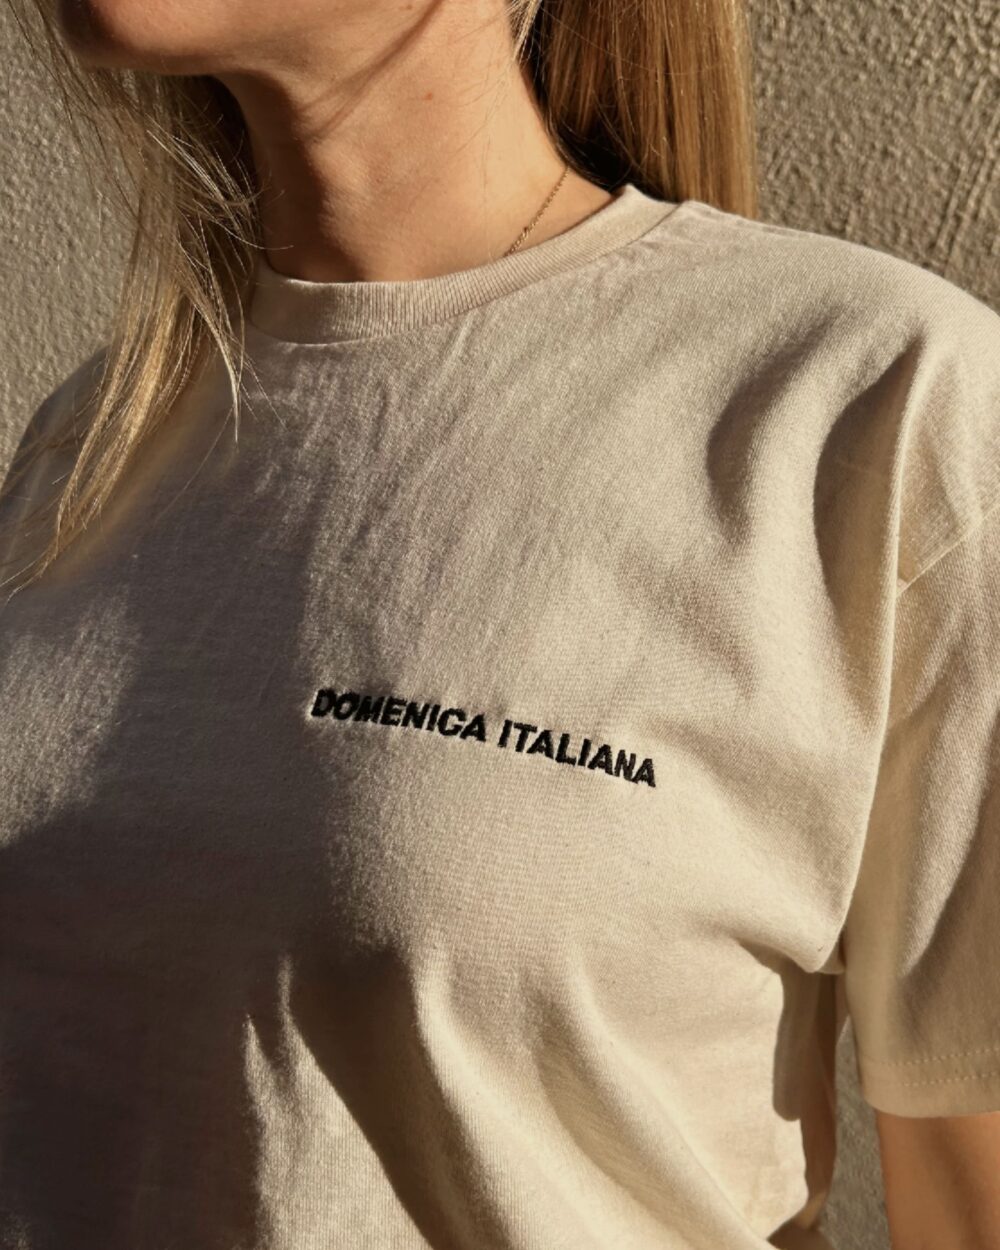 T-Shirt 'Domenica Italiana'